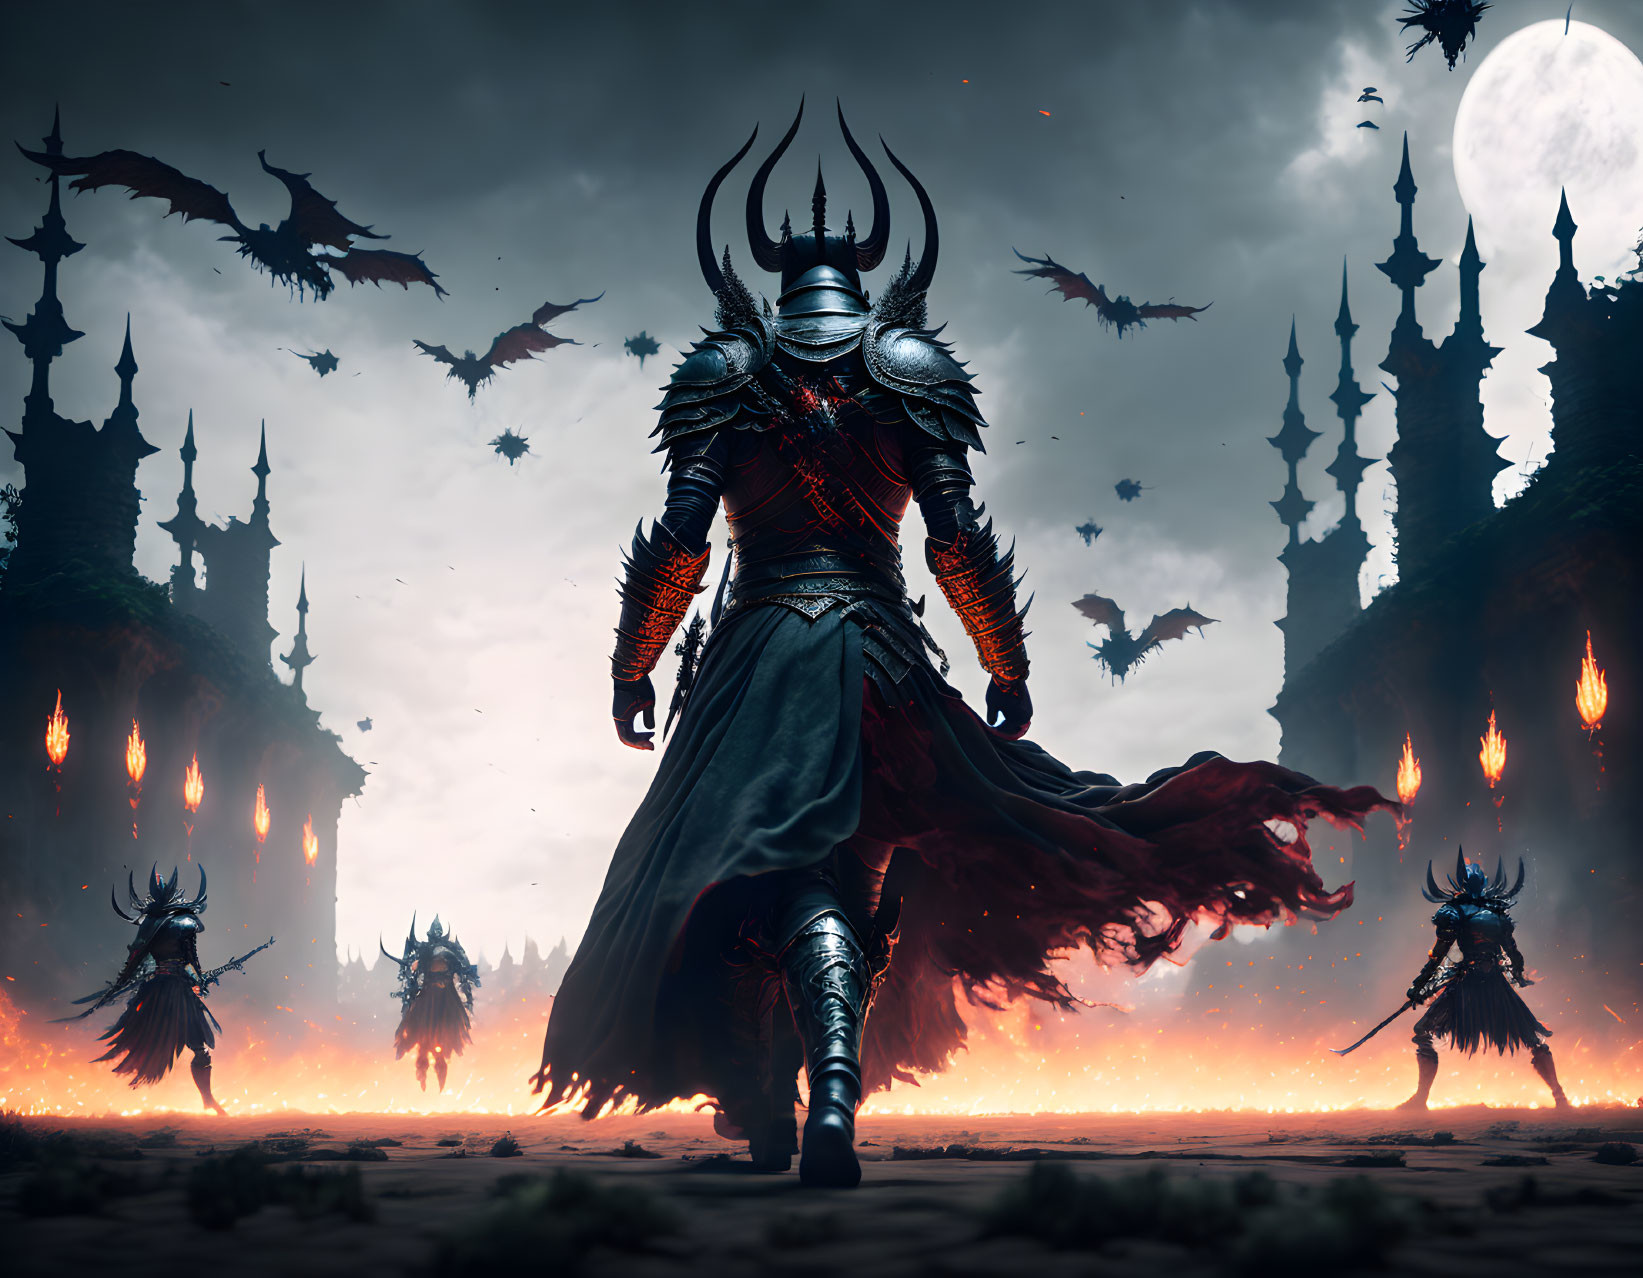 Fantasy warrior in ornate armor in fiery dragon landscape